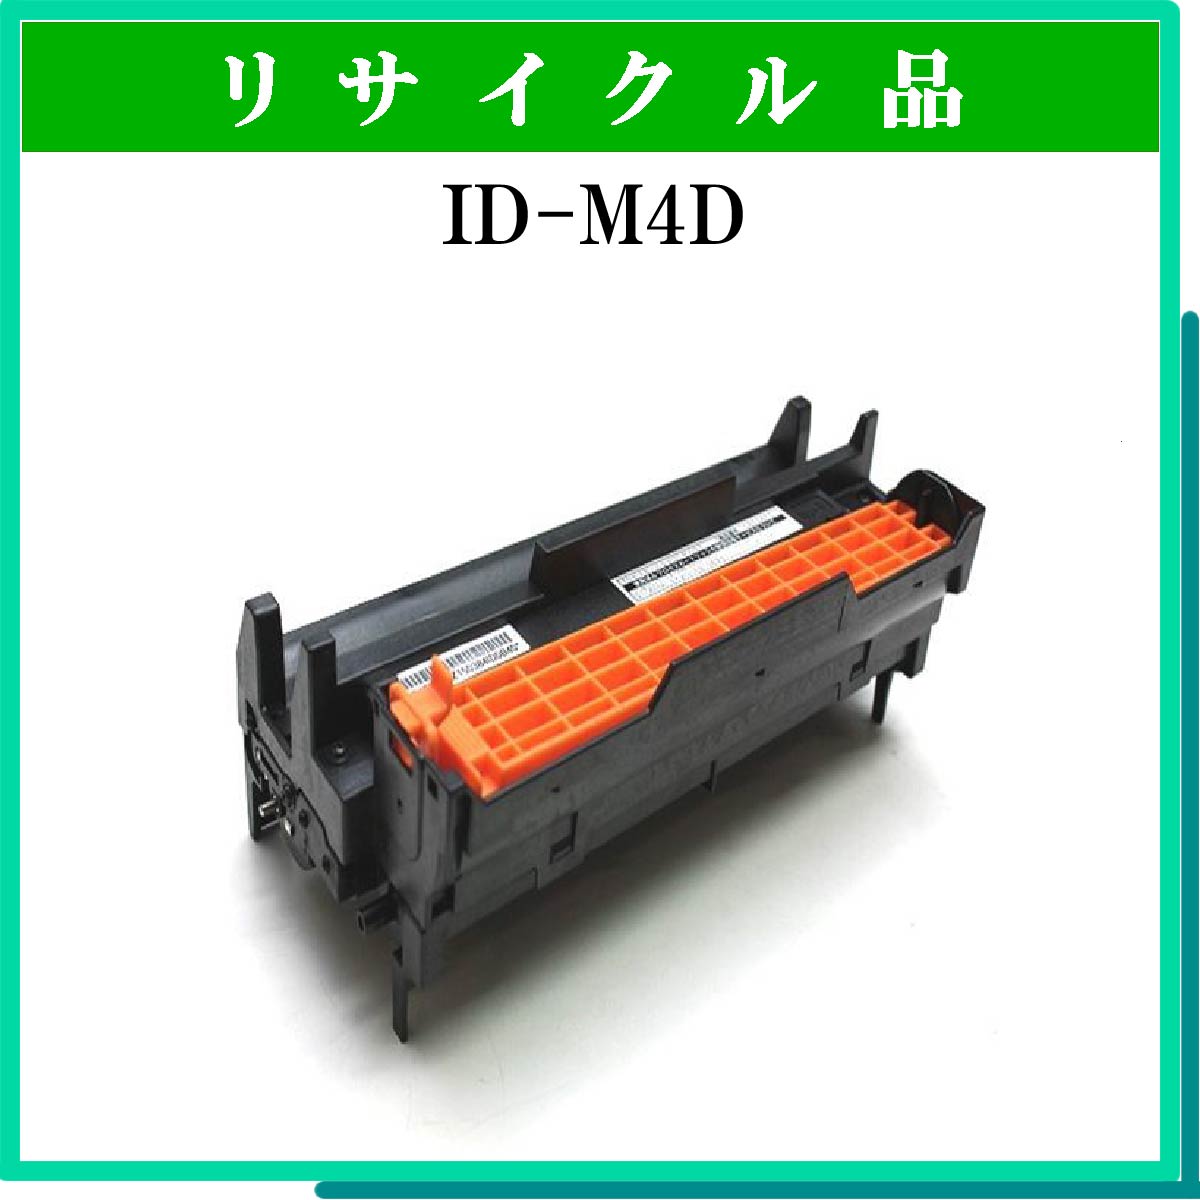 ID-M4D